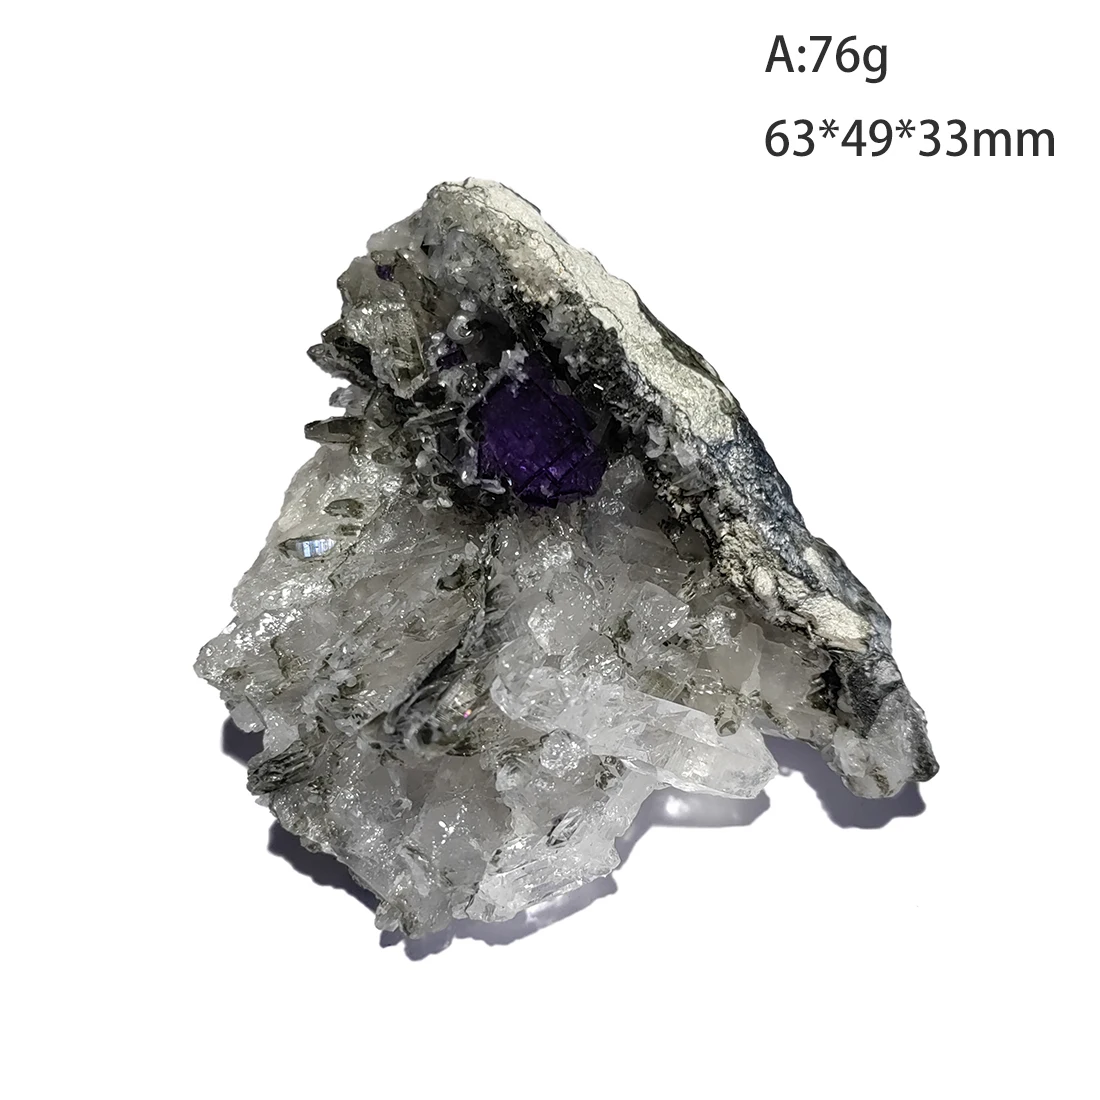 

C3-6N-4 100% натуральный флюорит, минеральный кристалл, образец Yaogangxian Hunan, провинция Китай